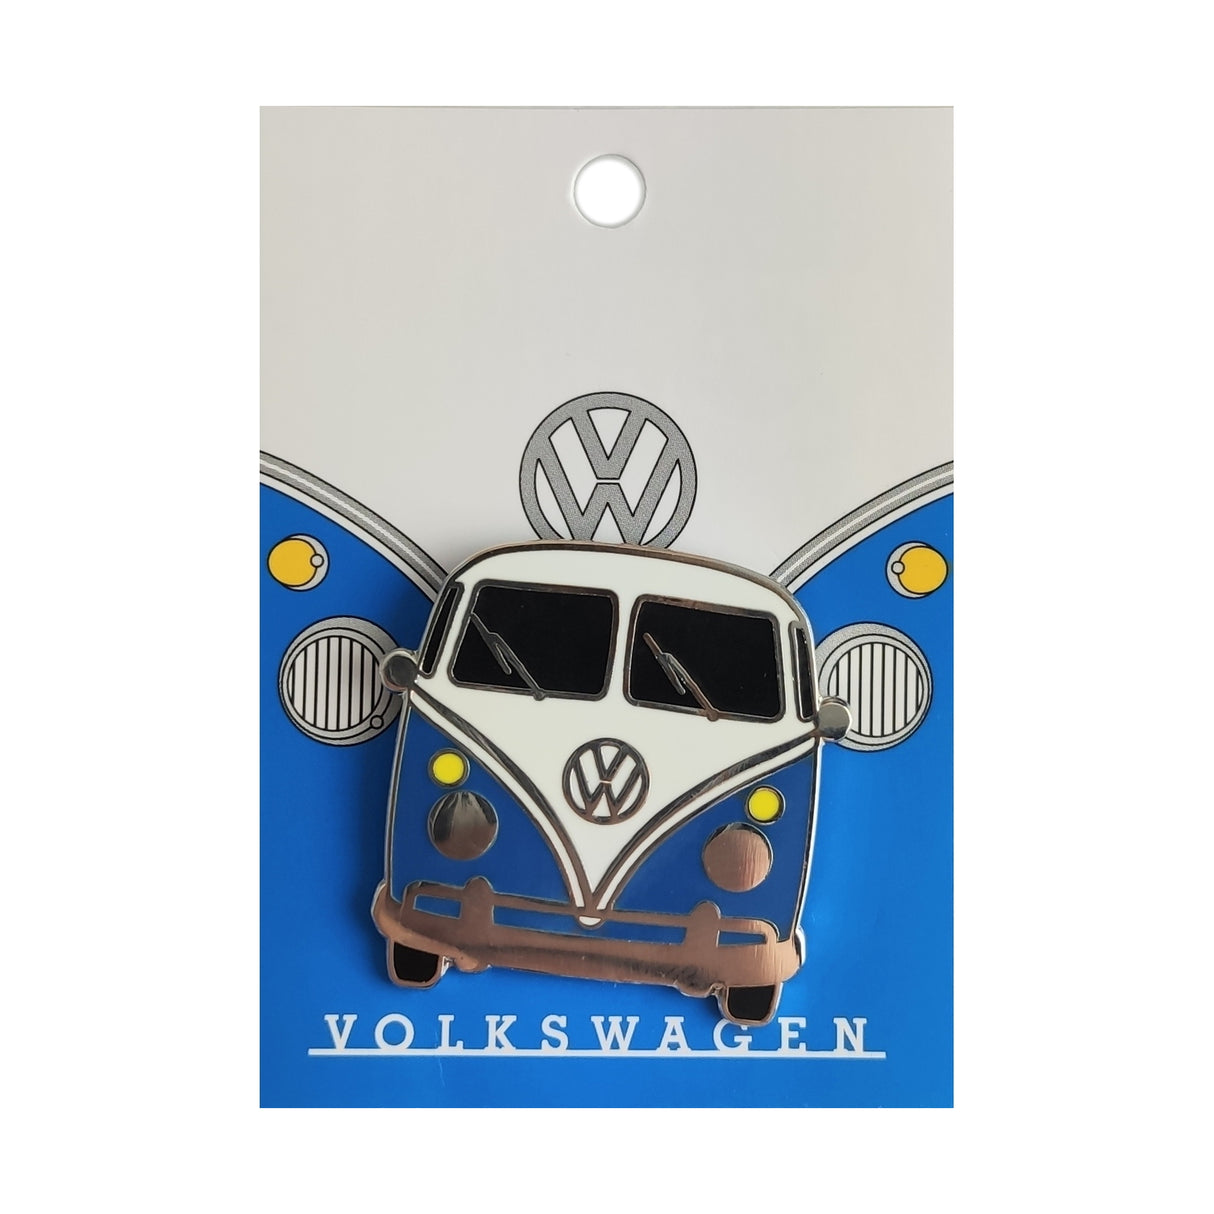 Volkswagen VW T1 Bus Ansteckbutton in blau